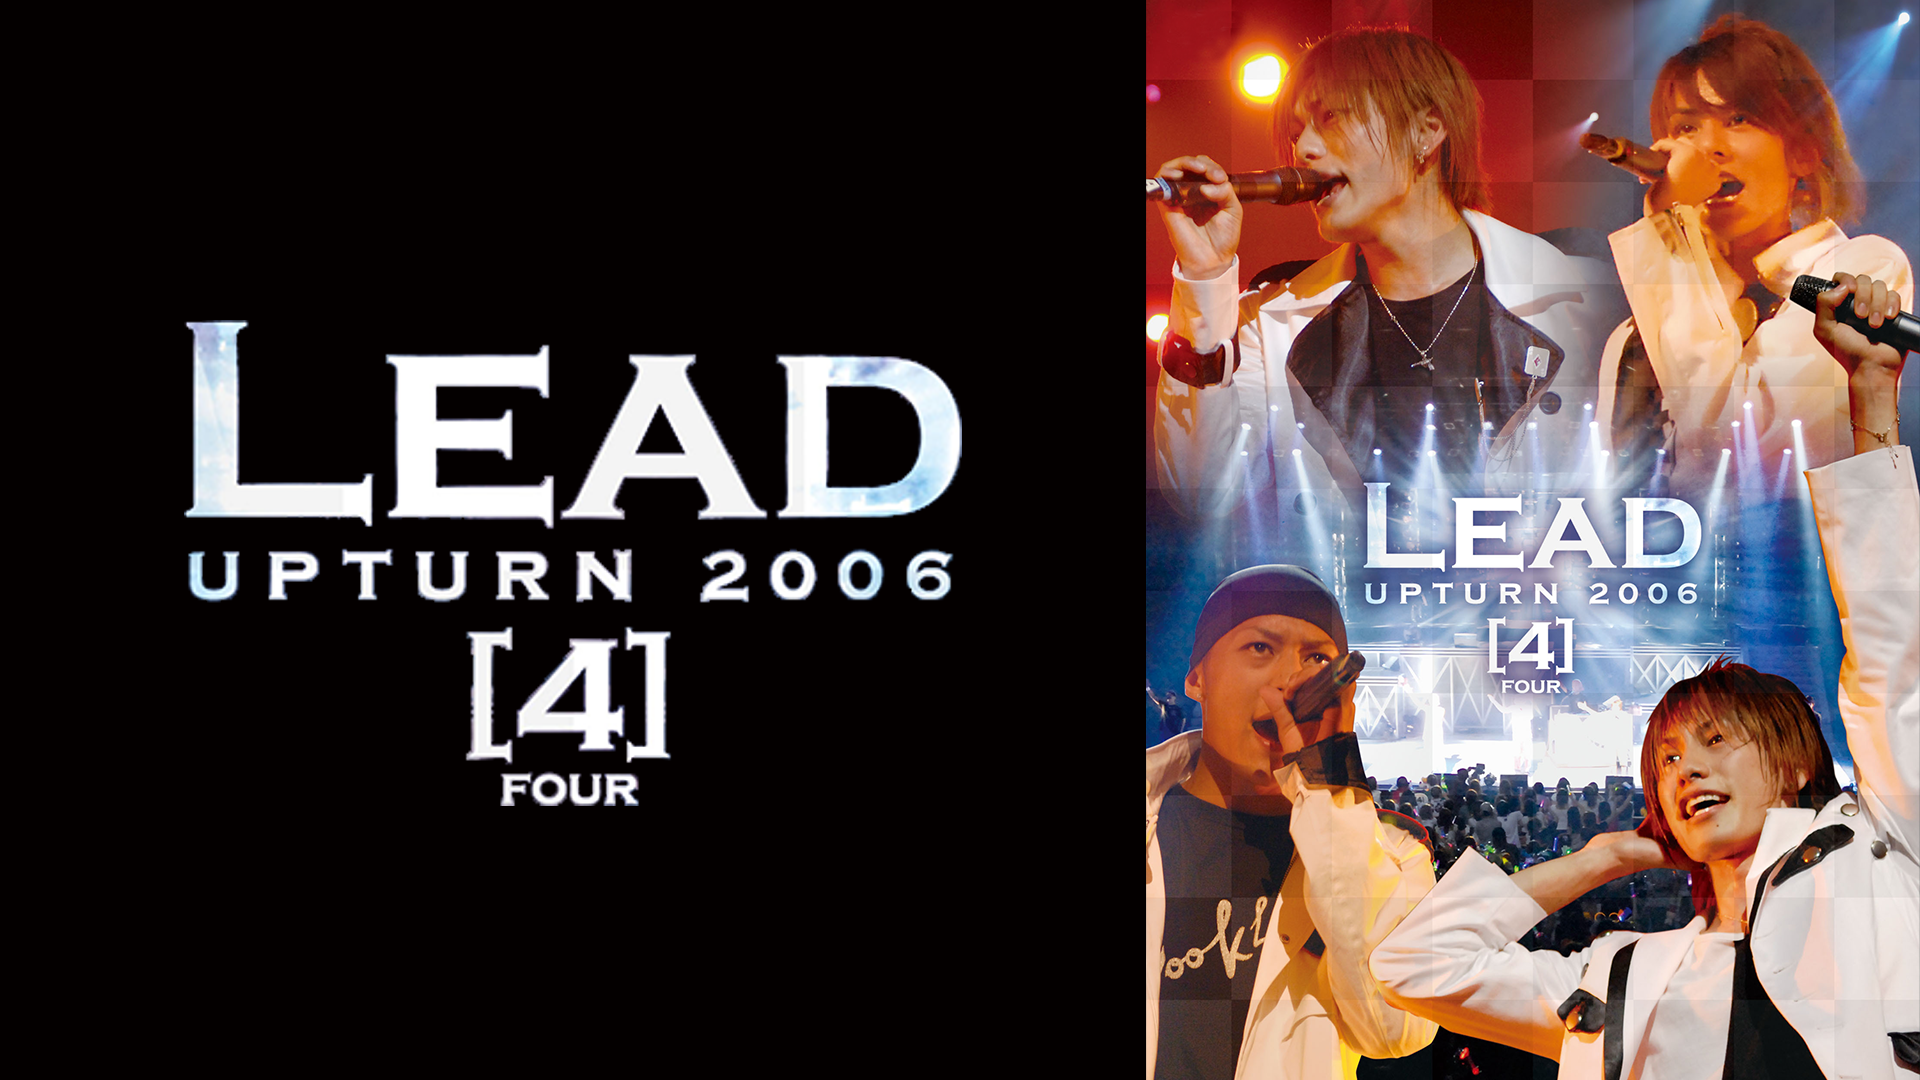 Lead Upturn 2007 -B.W.R-(音楽・アイドル / 2007) - 動画配信 | U-NEXT 31日間無料トライアル